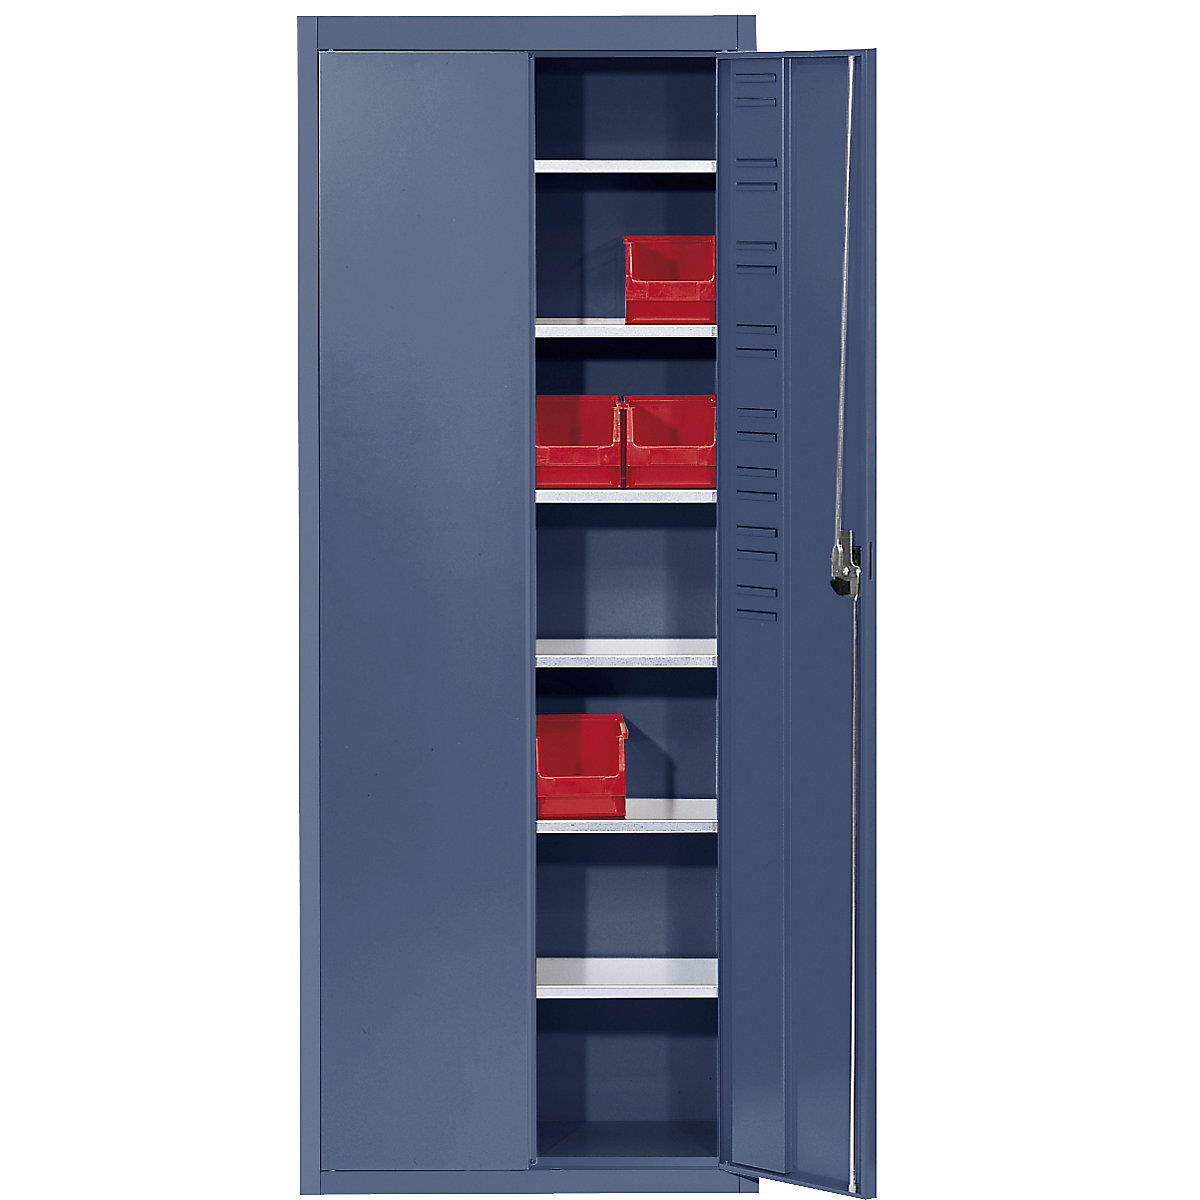 Rekesztároló szekrény, nyitott tárolódobozok nélkül – mauser, ma x szé x mé 1740 x 680 x 280 mm, egyszínű, ragyogó kék-7